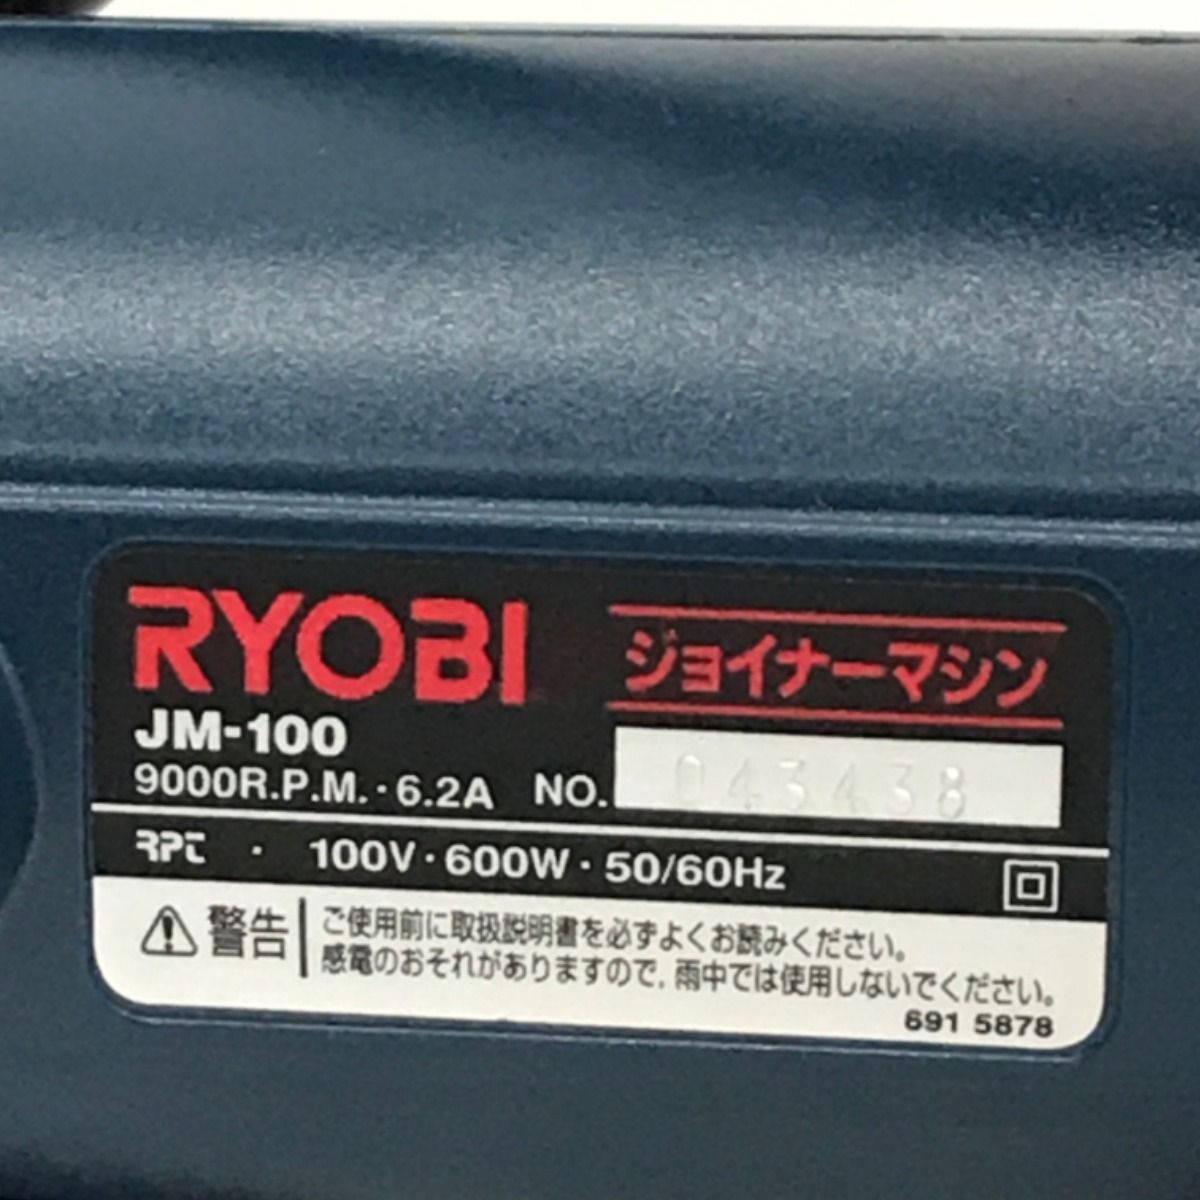 ▽▽ RYOBI リョービ 100Vジョイナーマシン コード式 JM-100 ブルー